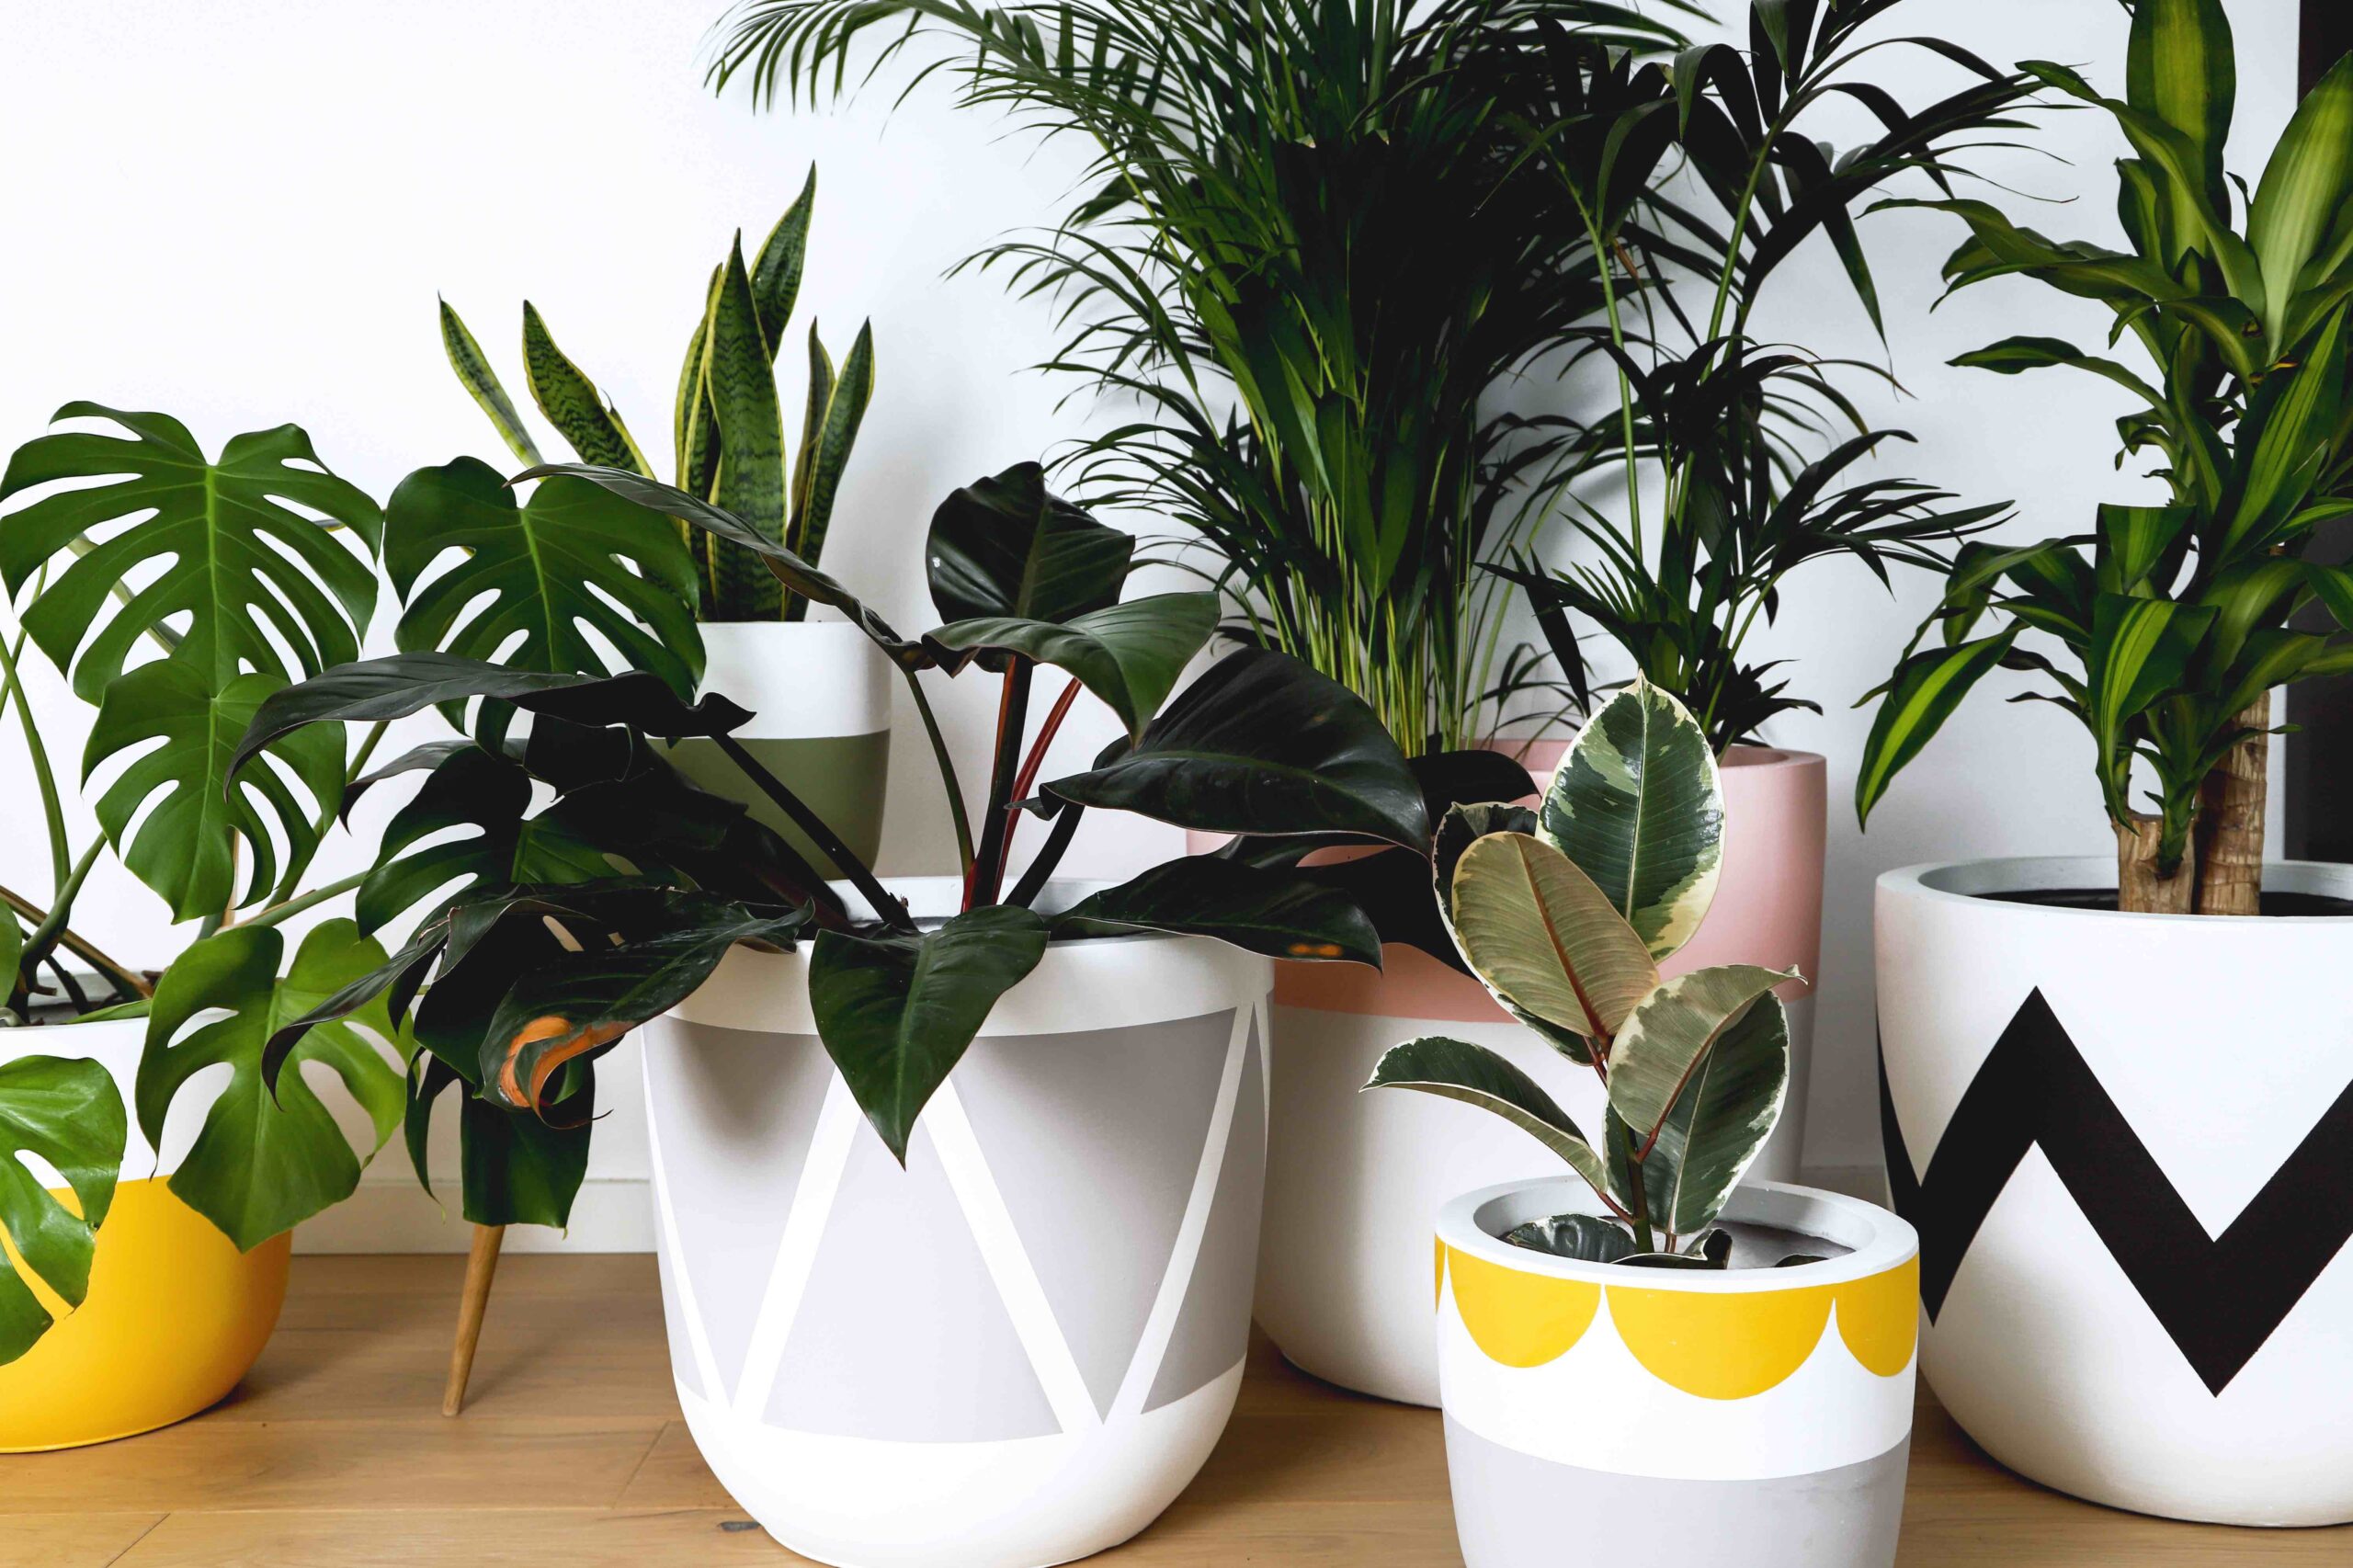 Popular brands of indoor plant pots on legs